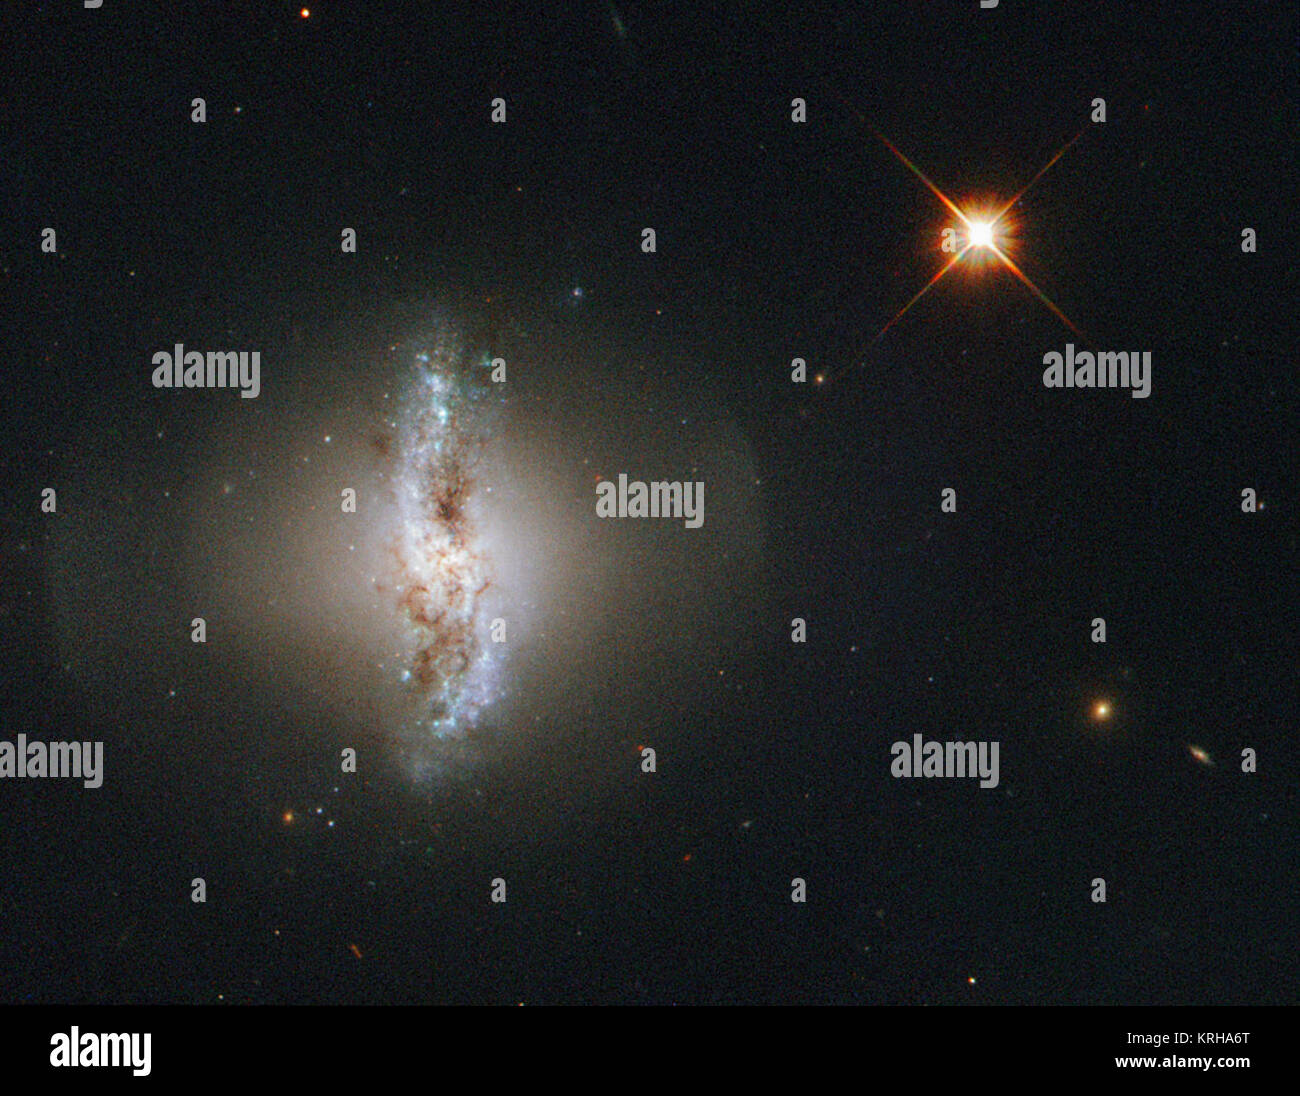 Questa immagine della settimana mostra Arp 230, noto anche come IC 51, osservato dalla NASA/ESA Telescopio Spaziale Hubble. Arp 230 è una galassia di un raro o forma singolare ed è pertanto parte dell'Atlante delle galassie peculiari prodotta da Halton Arp. La sua forma irregolare è pensato per essere il risultato di una violenta collisione con un'altra galassia in passato. La collisione potrebbe anche essere ritenuto responsabile per la formazione della galassia anello polare. L'anello esterno che circonda la galassia è costituito da gas e stelle e ruota attorno ai poli della galassia. Si è pensato che l'orbita del più piccolo dei Foto Stock